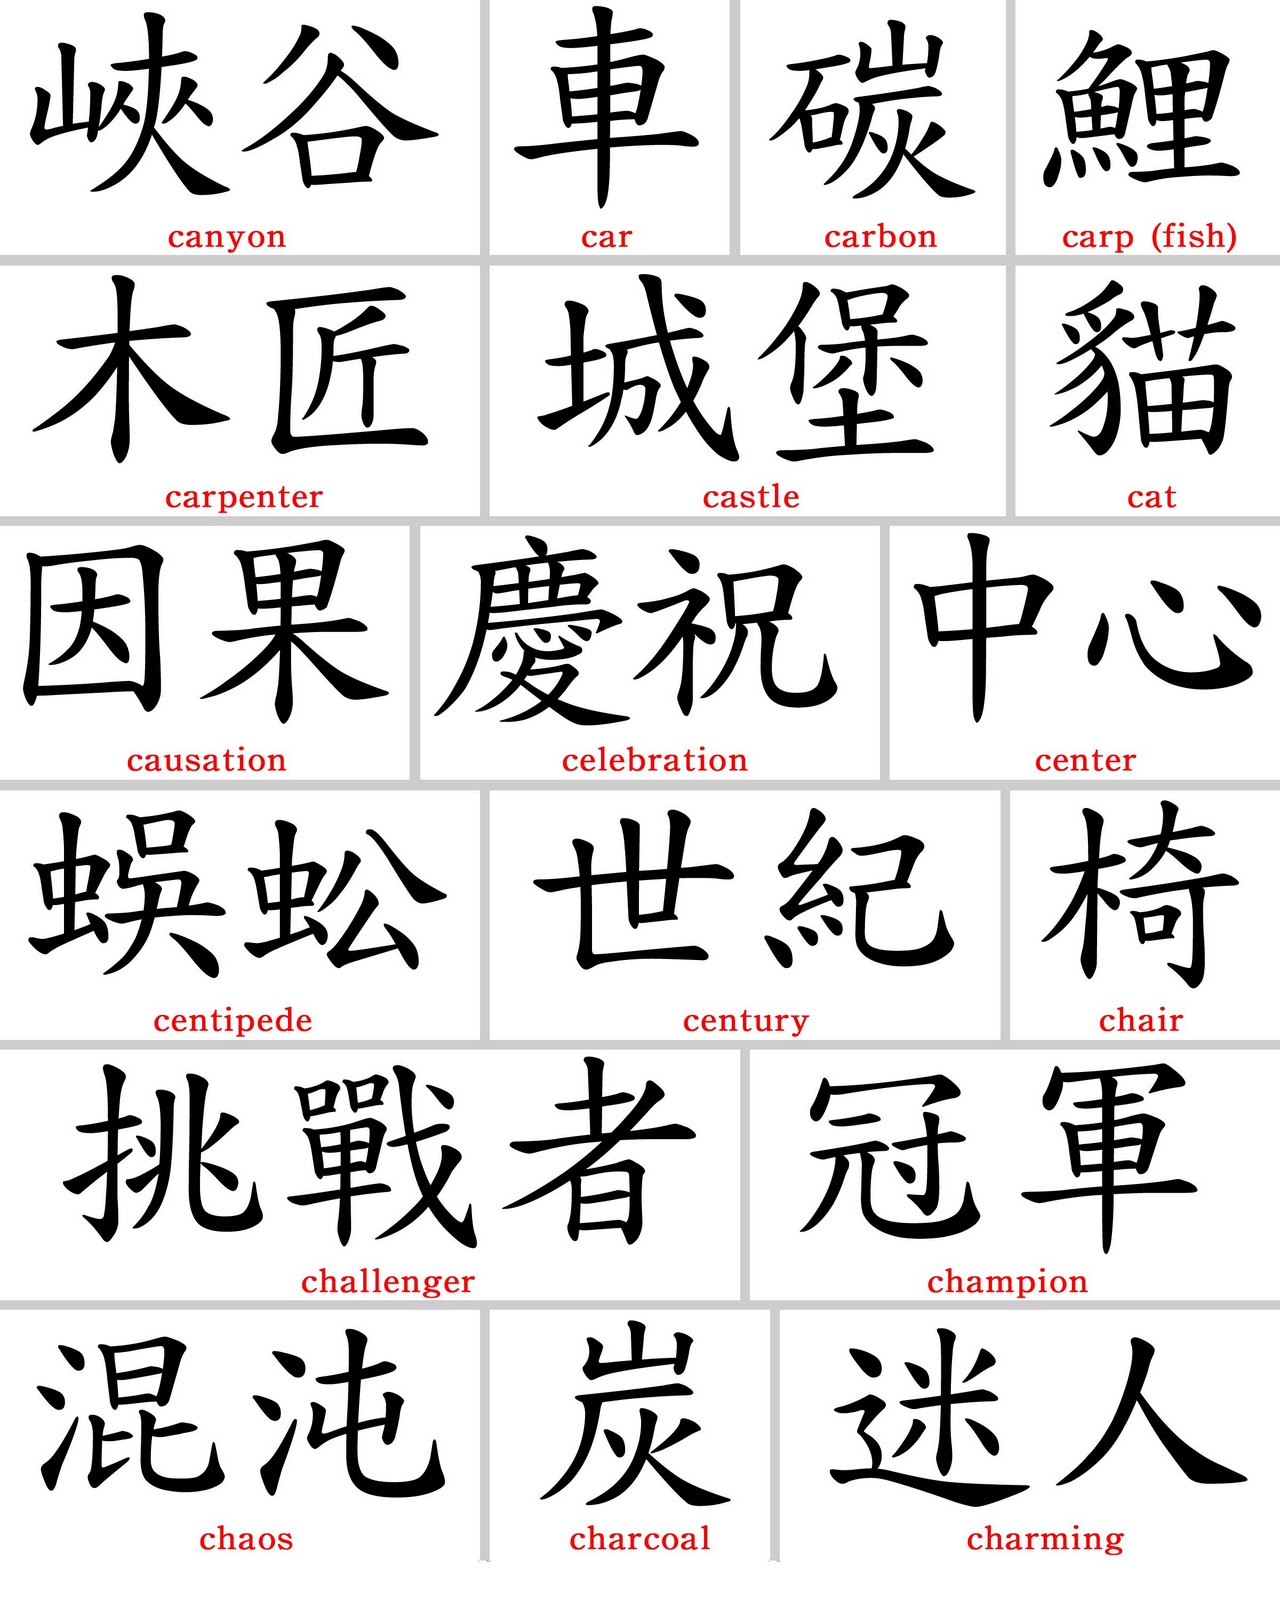 Японские символы и их значение